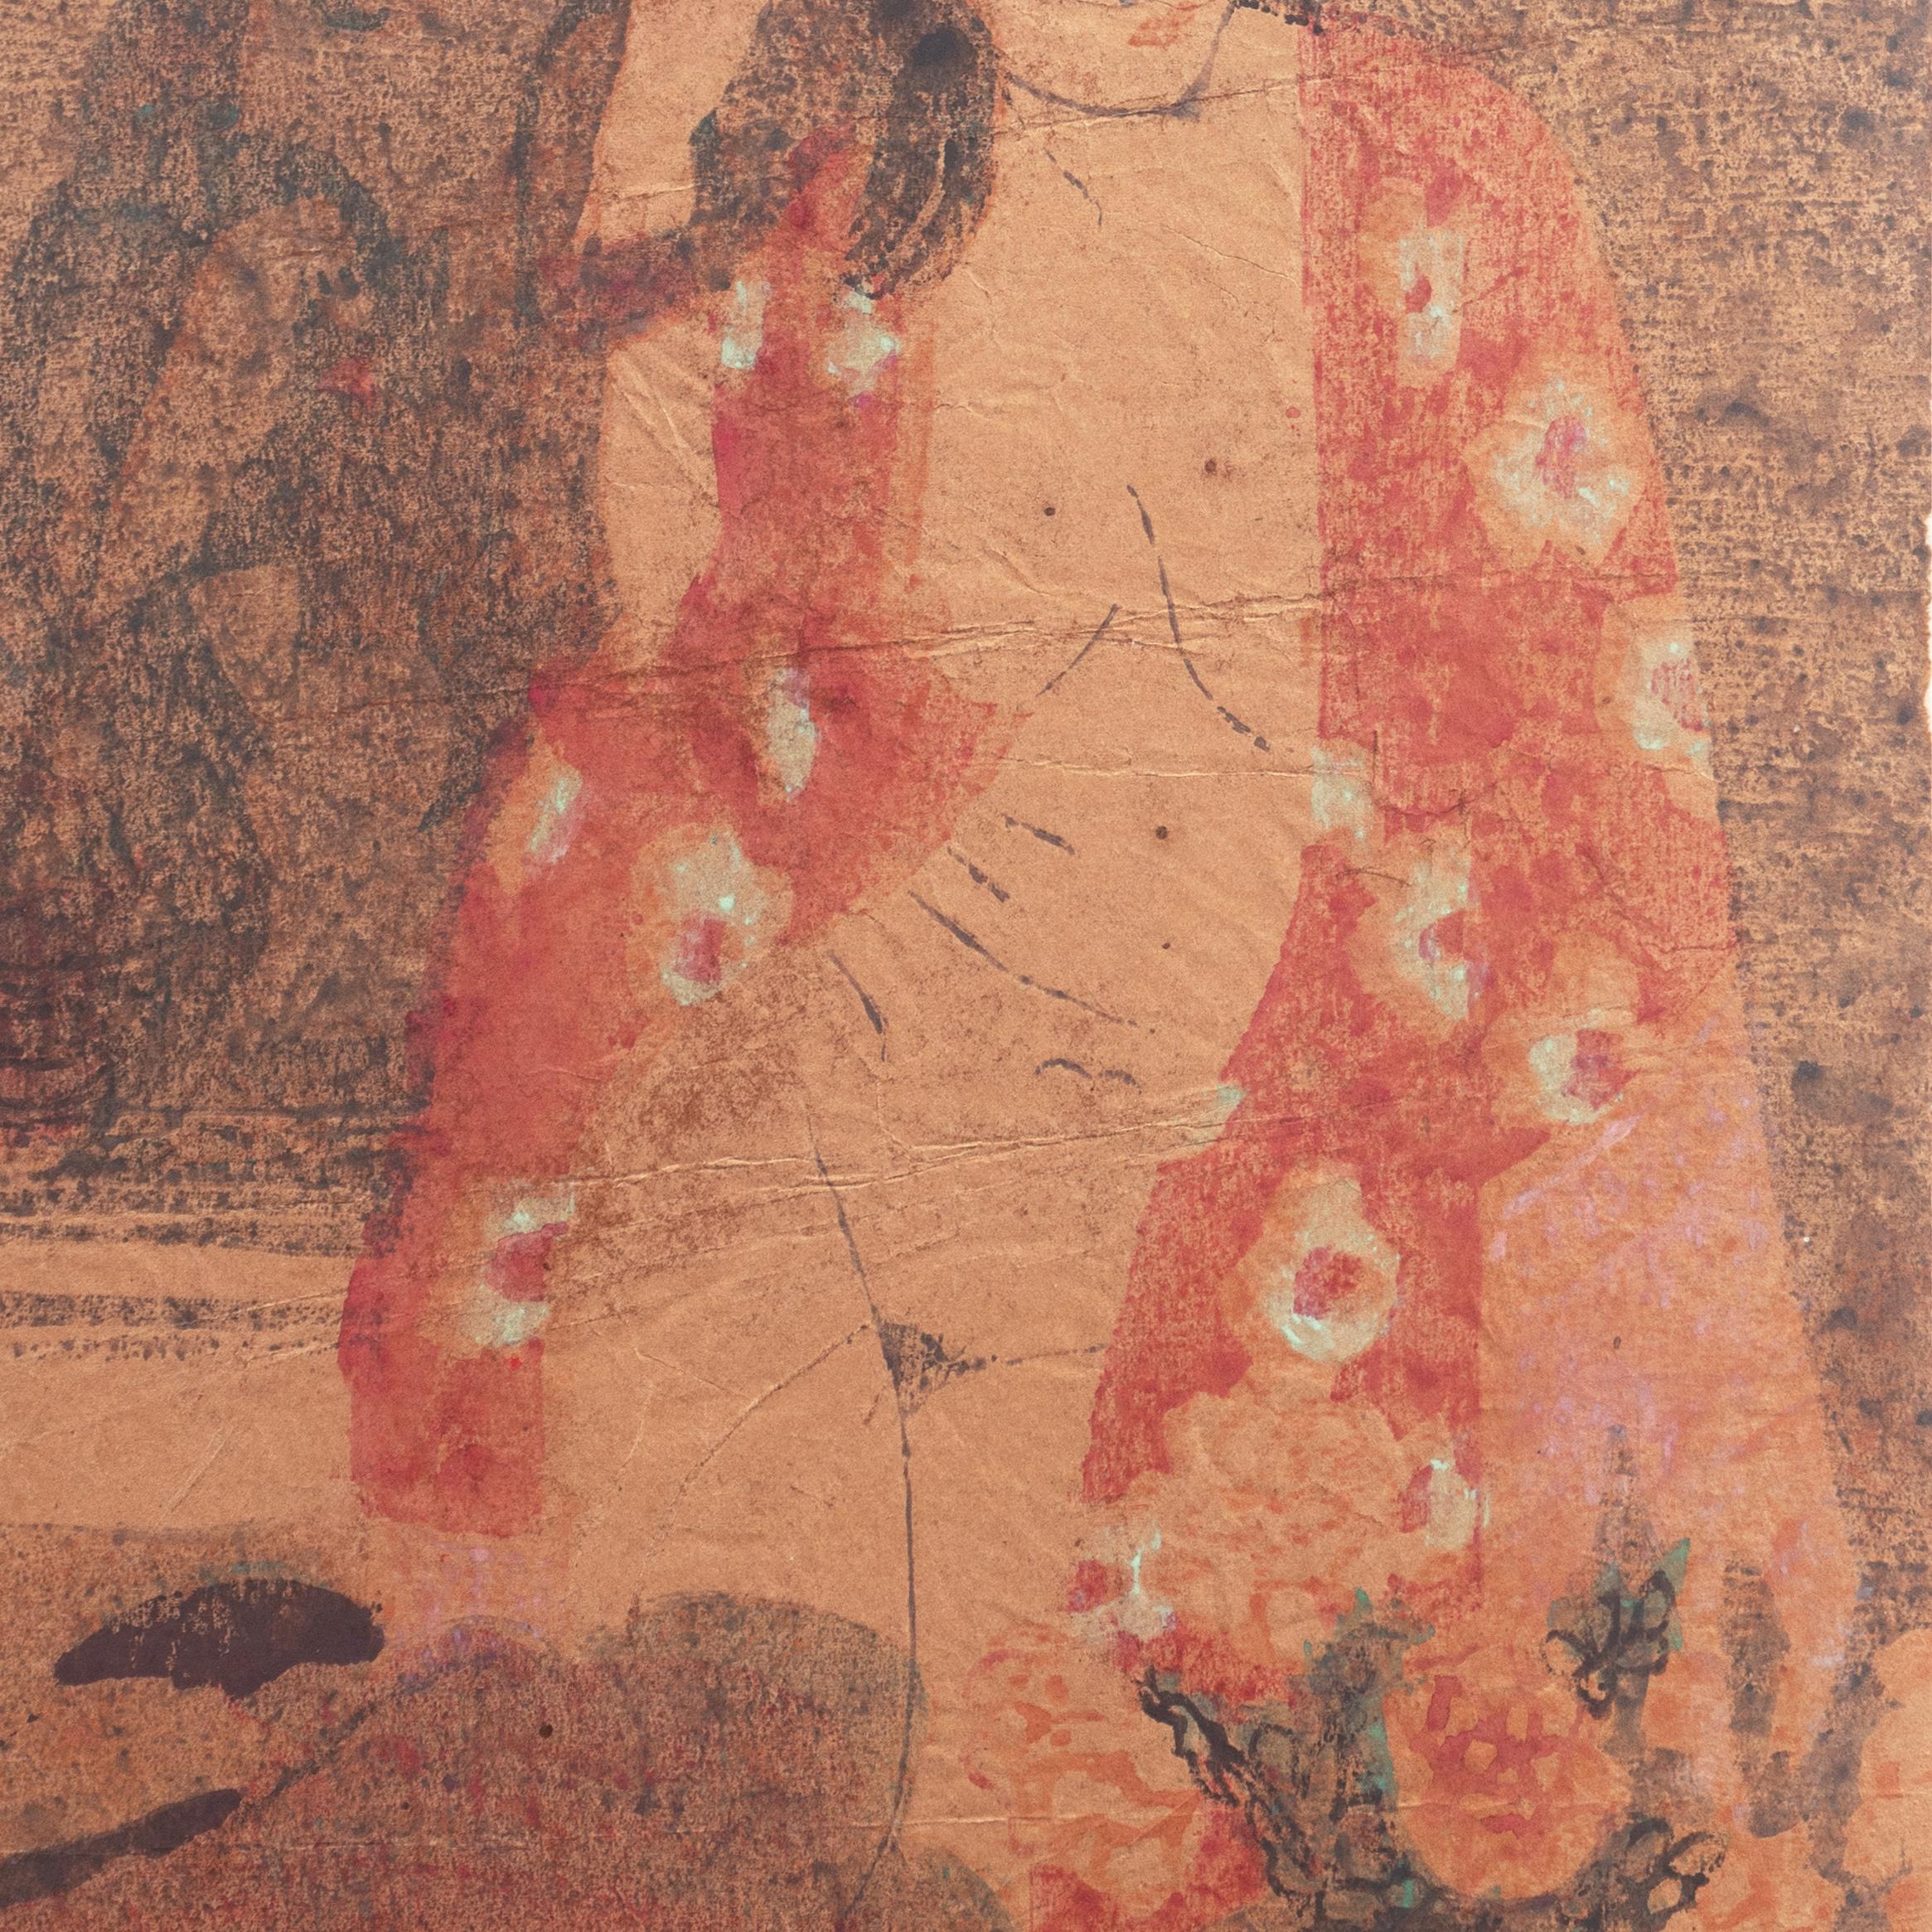 'Woman in Kimono', Louvre, Academie Chaumiere, Paris, California, SFAA, LACMA - Post-Impressionist Print by Victor Di Gesu